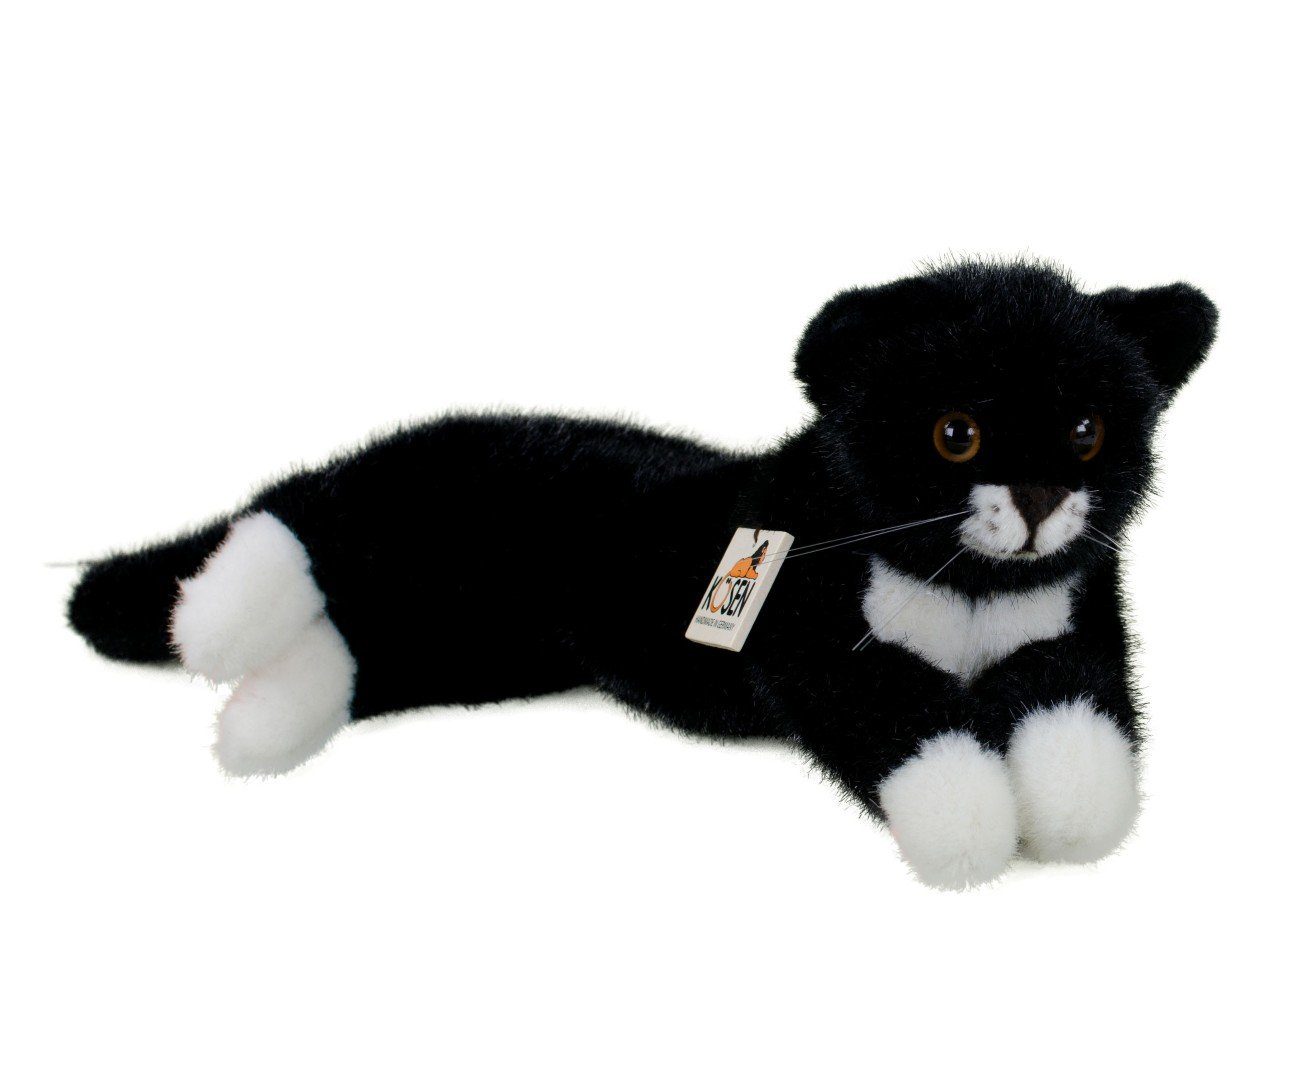 Kösen Kuscheltier »Katze Fini 41 cm liegend schwarz-weiß« (Stoffkatze  Plüschkatze, Stofftiere Katzen Plüschtiere Katzenbabys Babykatze Spielzeug)  online kaufen | OTTO